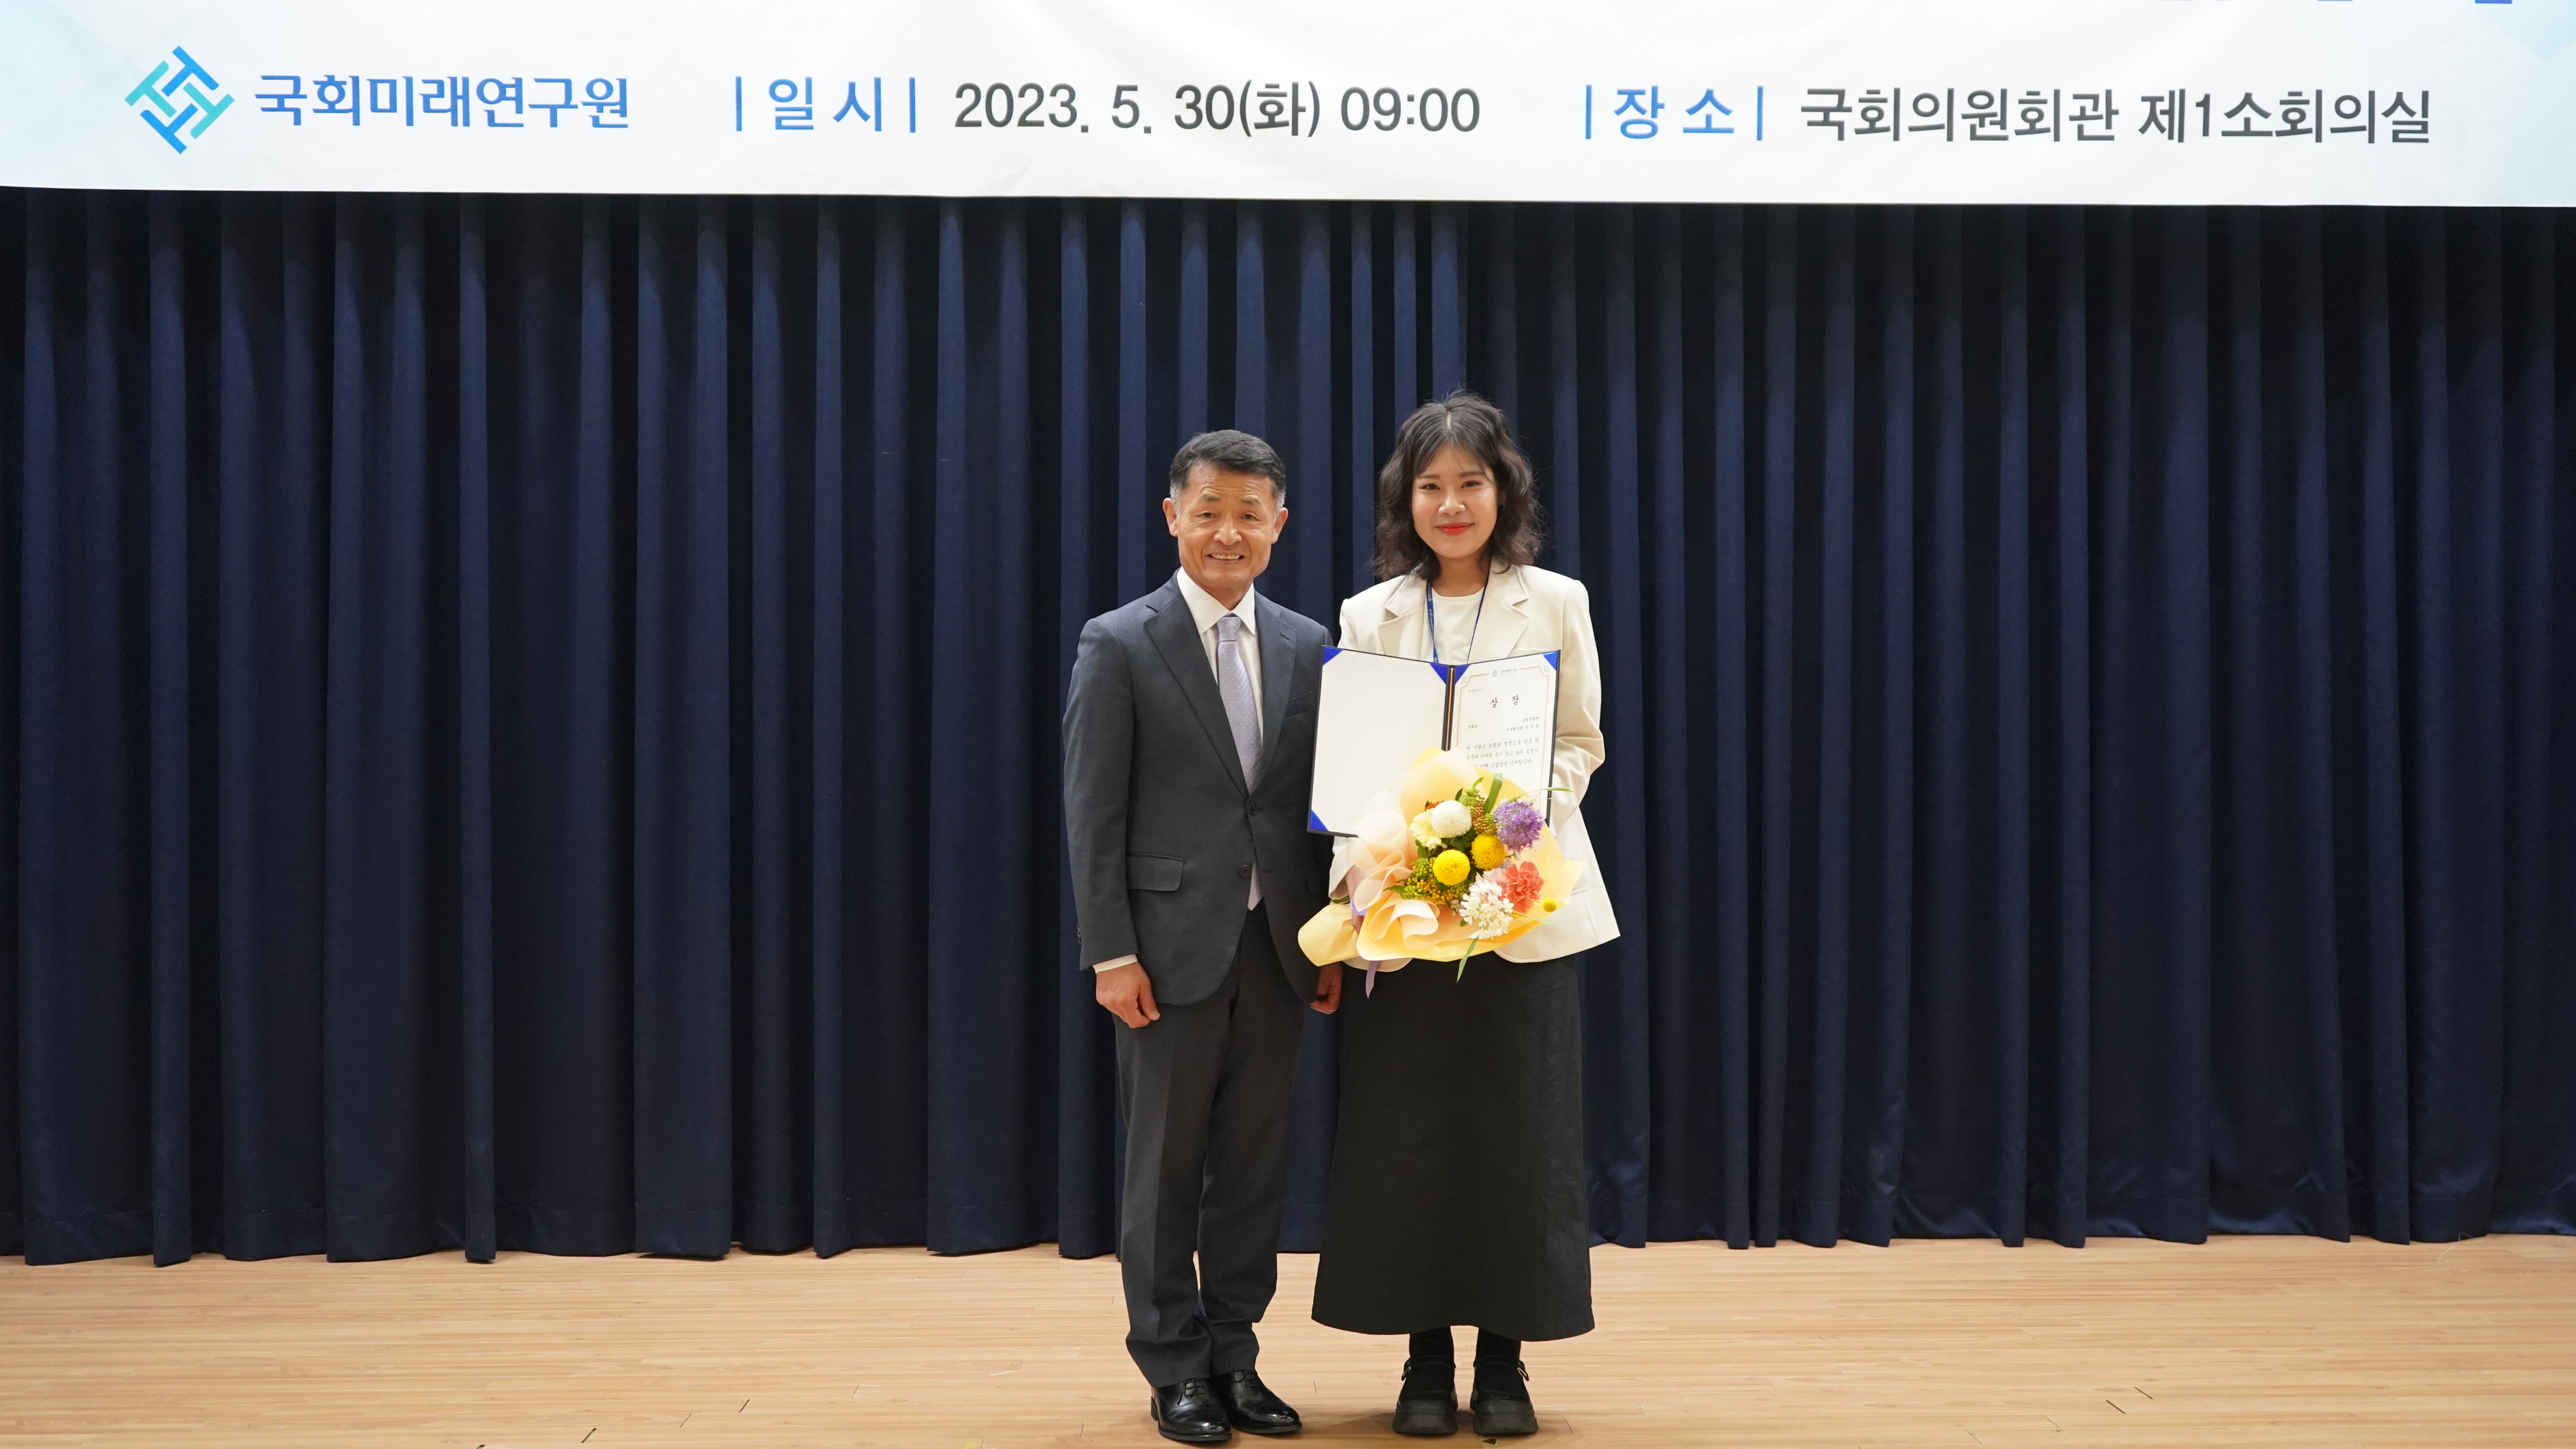 [05.30] 국회미래연구원, 개원 5주년 기념식 개최4